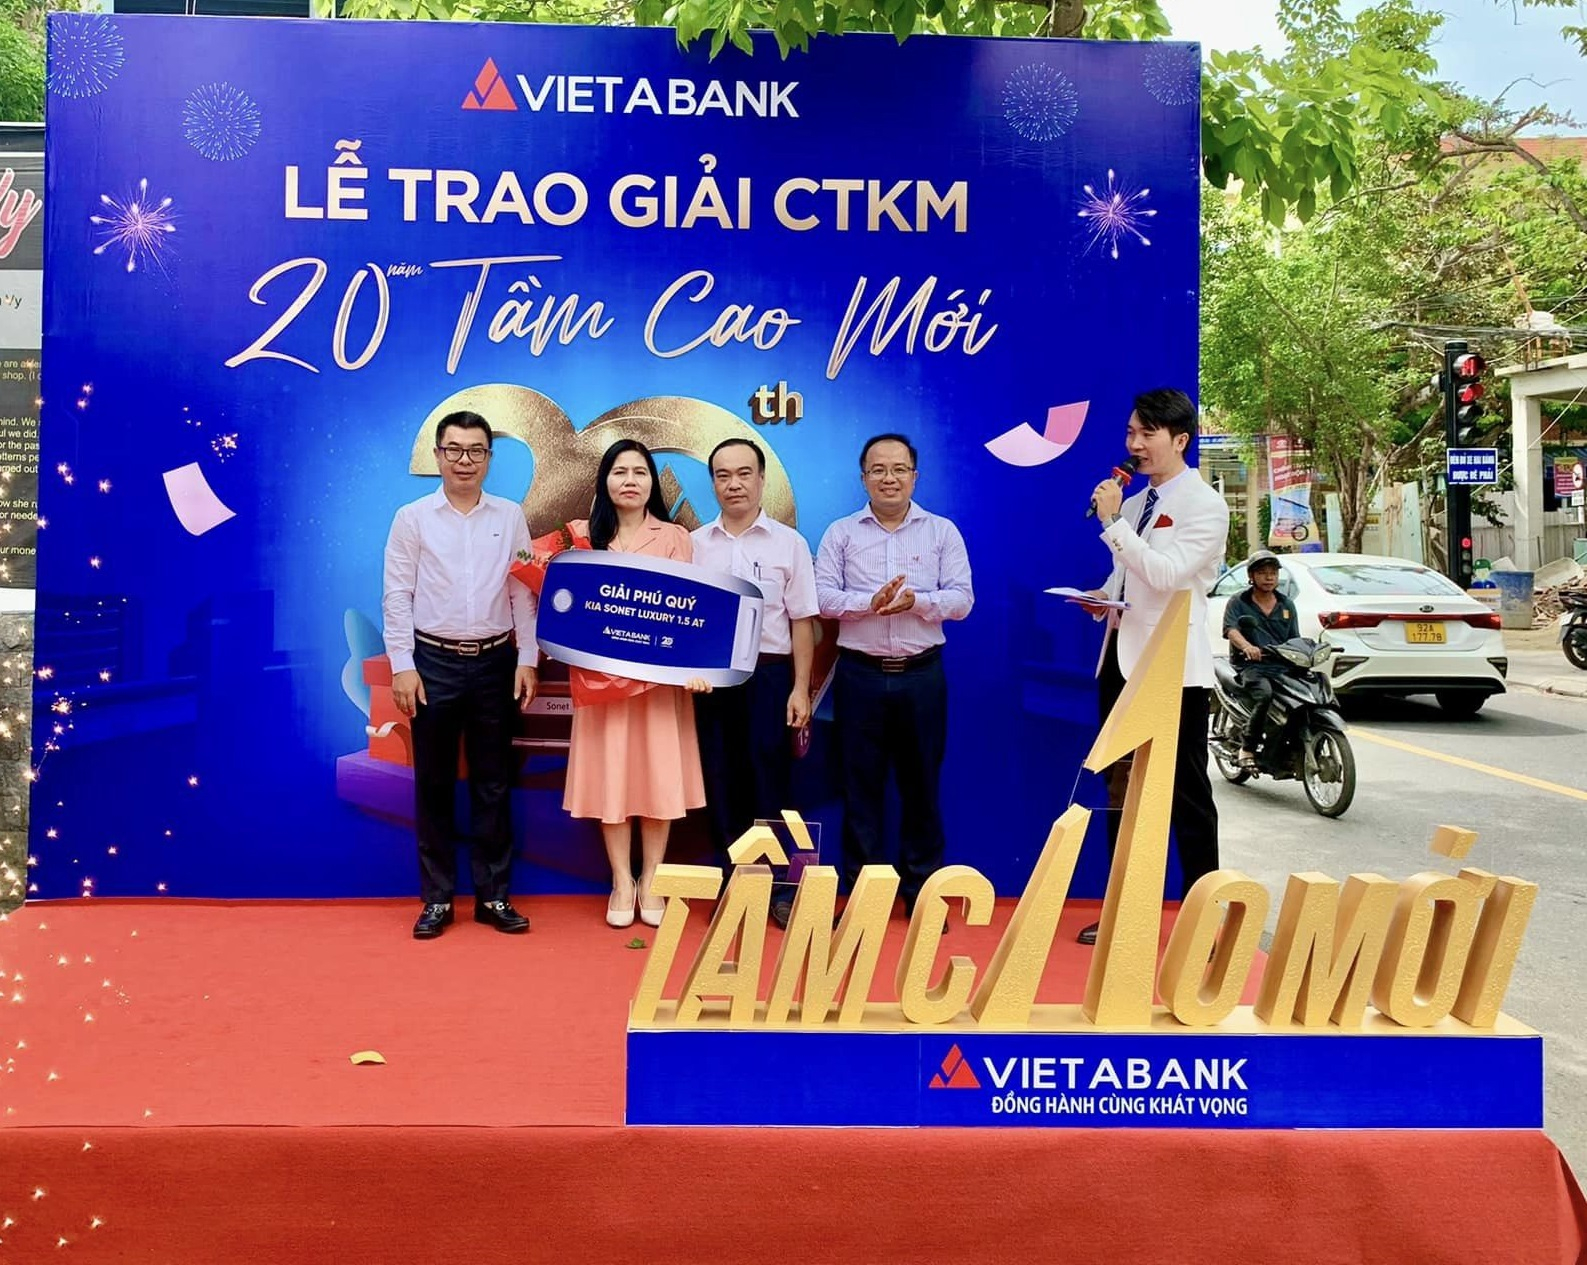 Ông Cù Anh Tuấn - Phó Tổng giám đốc VietABank trao thưởng cho khách hàng trúng giải Phú Qúy - 1 ô tô Kia Sonet.